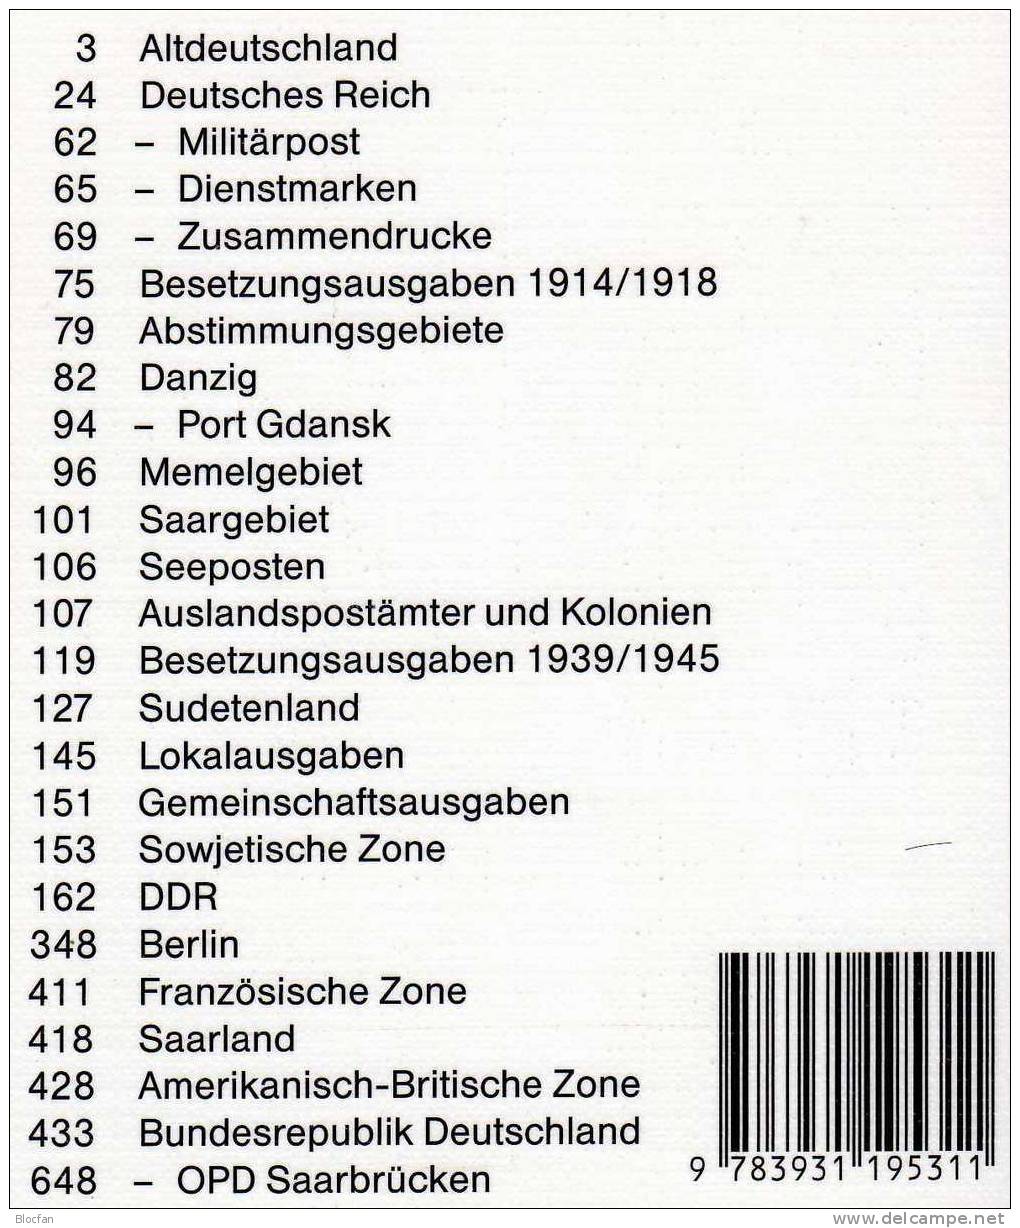 Briefmarken Katalog 2003 Antiquarisch 12€ Philex Altdeutschland Deutsches Reich Saar Danzig Memel SBZ DDR Berlin BRD - Germany